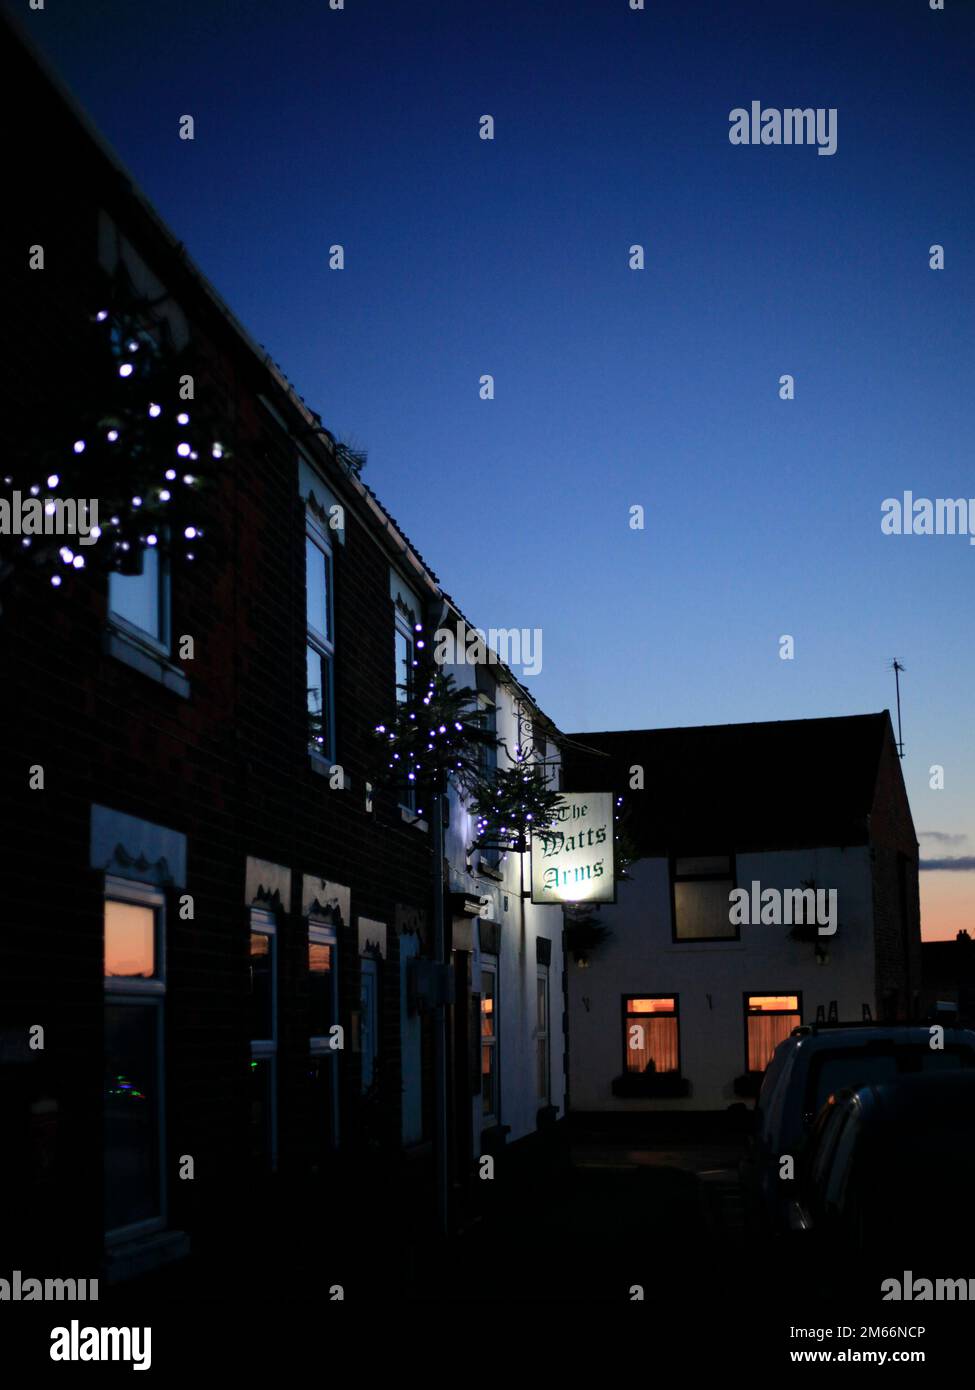 Festliche Weihnachtslichter im ländlichen Dorf Ottringham Holderness East Riding of Yorkshire England UK bei Sonnenuntergang mit tiefblauem Himmel Stockfoto